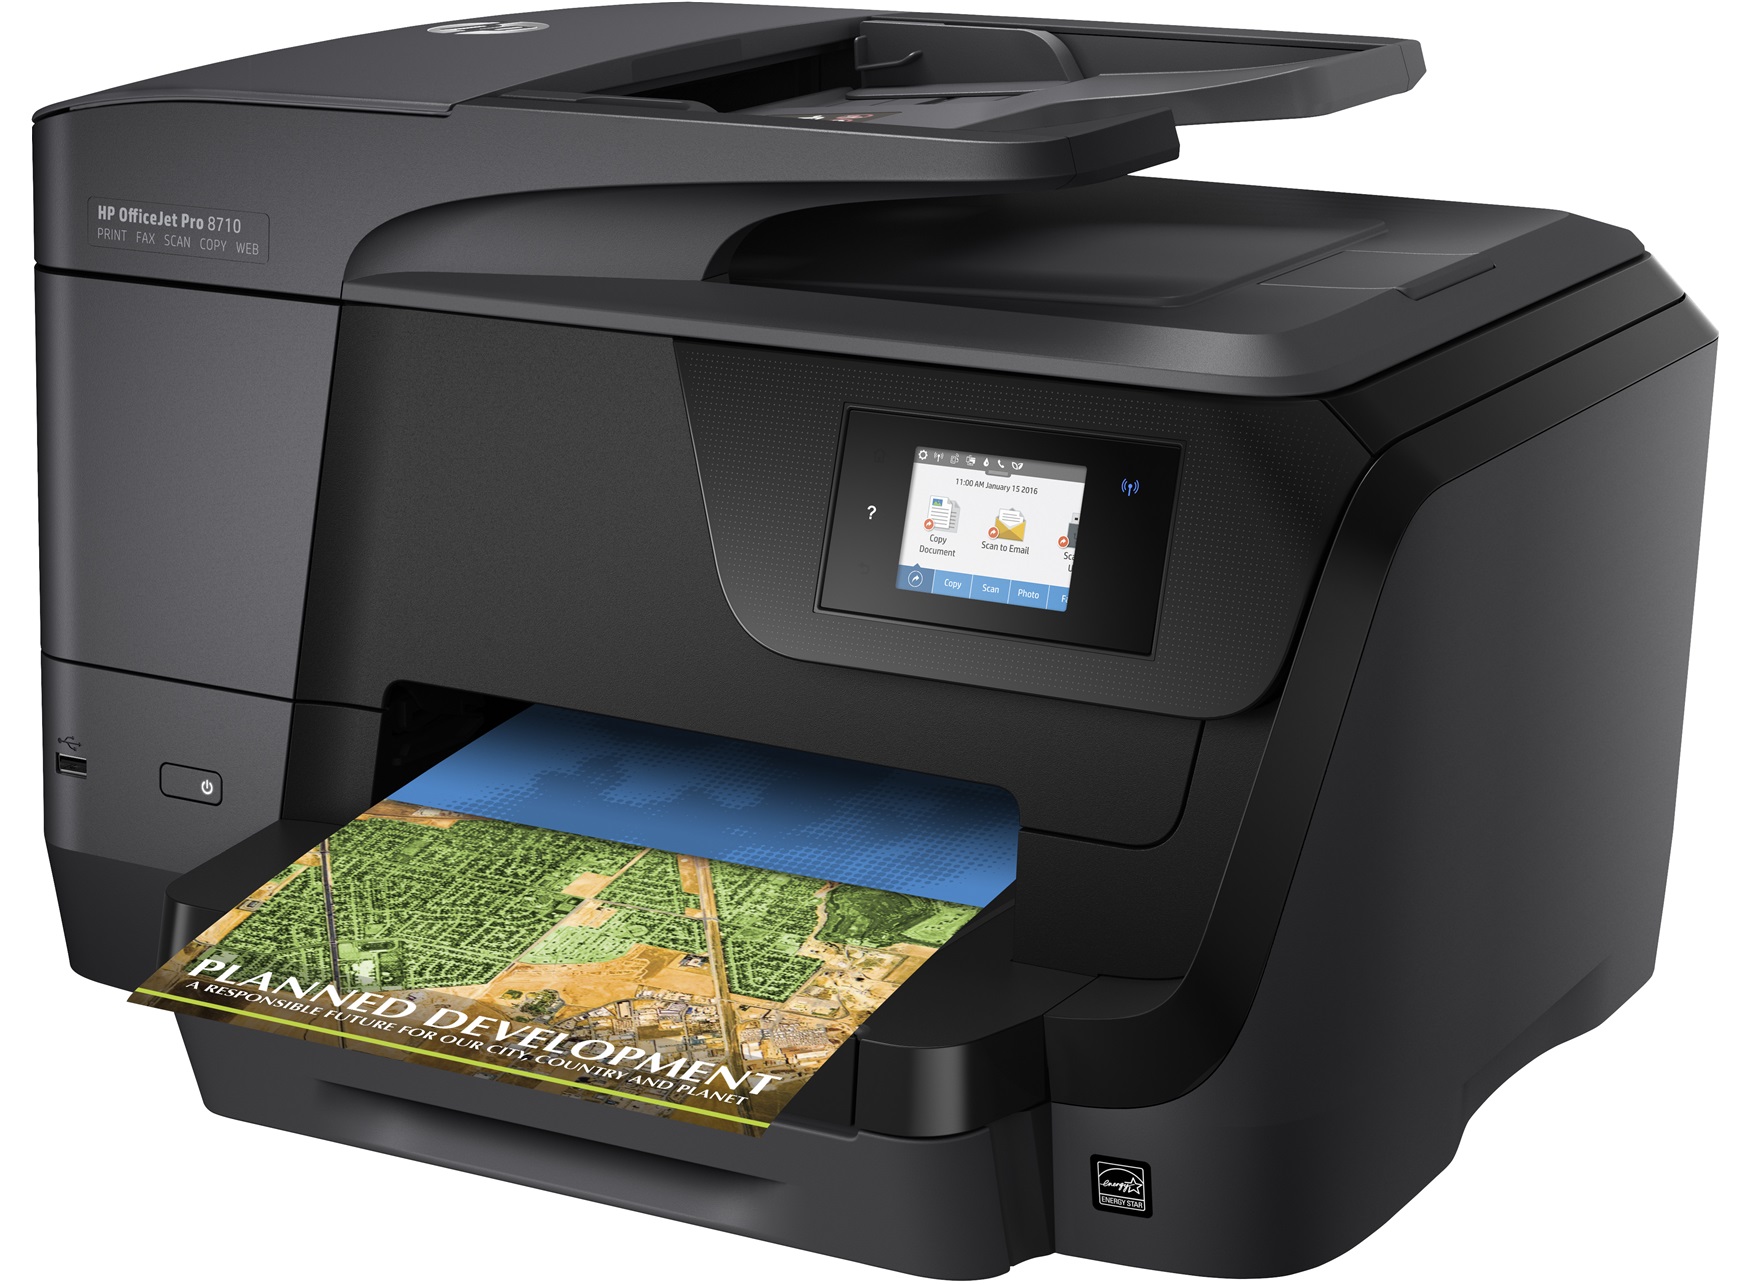 HP OfficeJet Pro 8710 Wireless All-in-One Printer